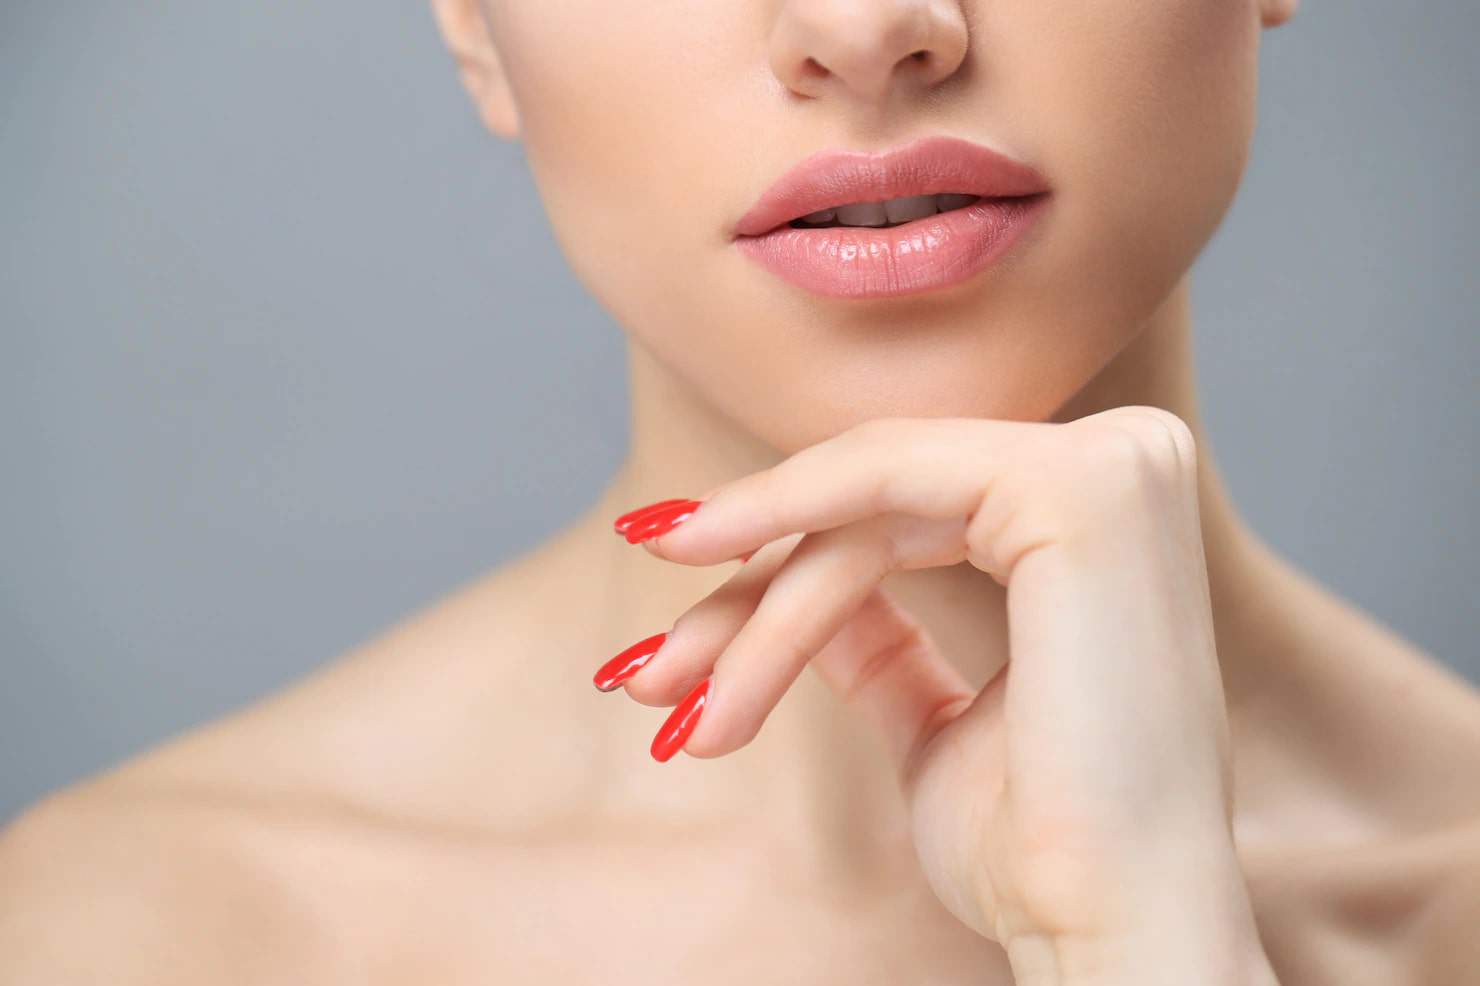 Phun xăm môi có đau không và những cách làm giảm đau hiệu quả  TRƯỜNG THẨM  MỸ ANA